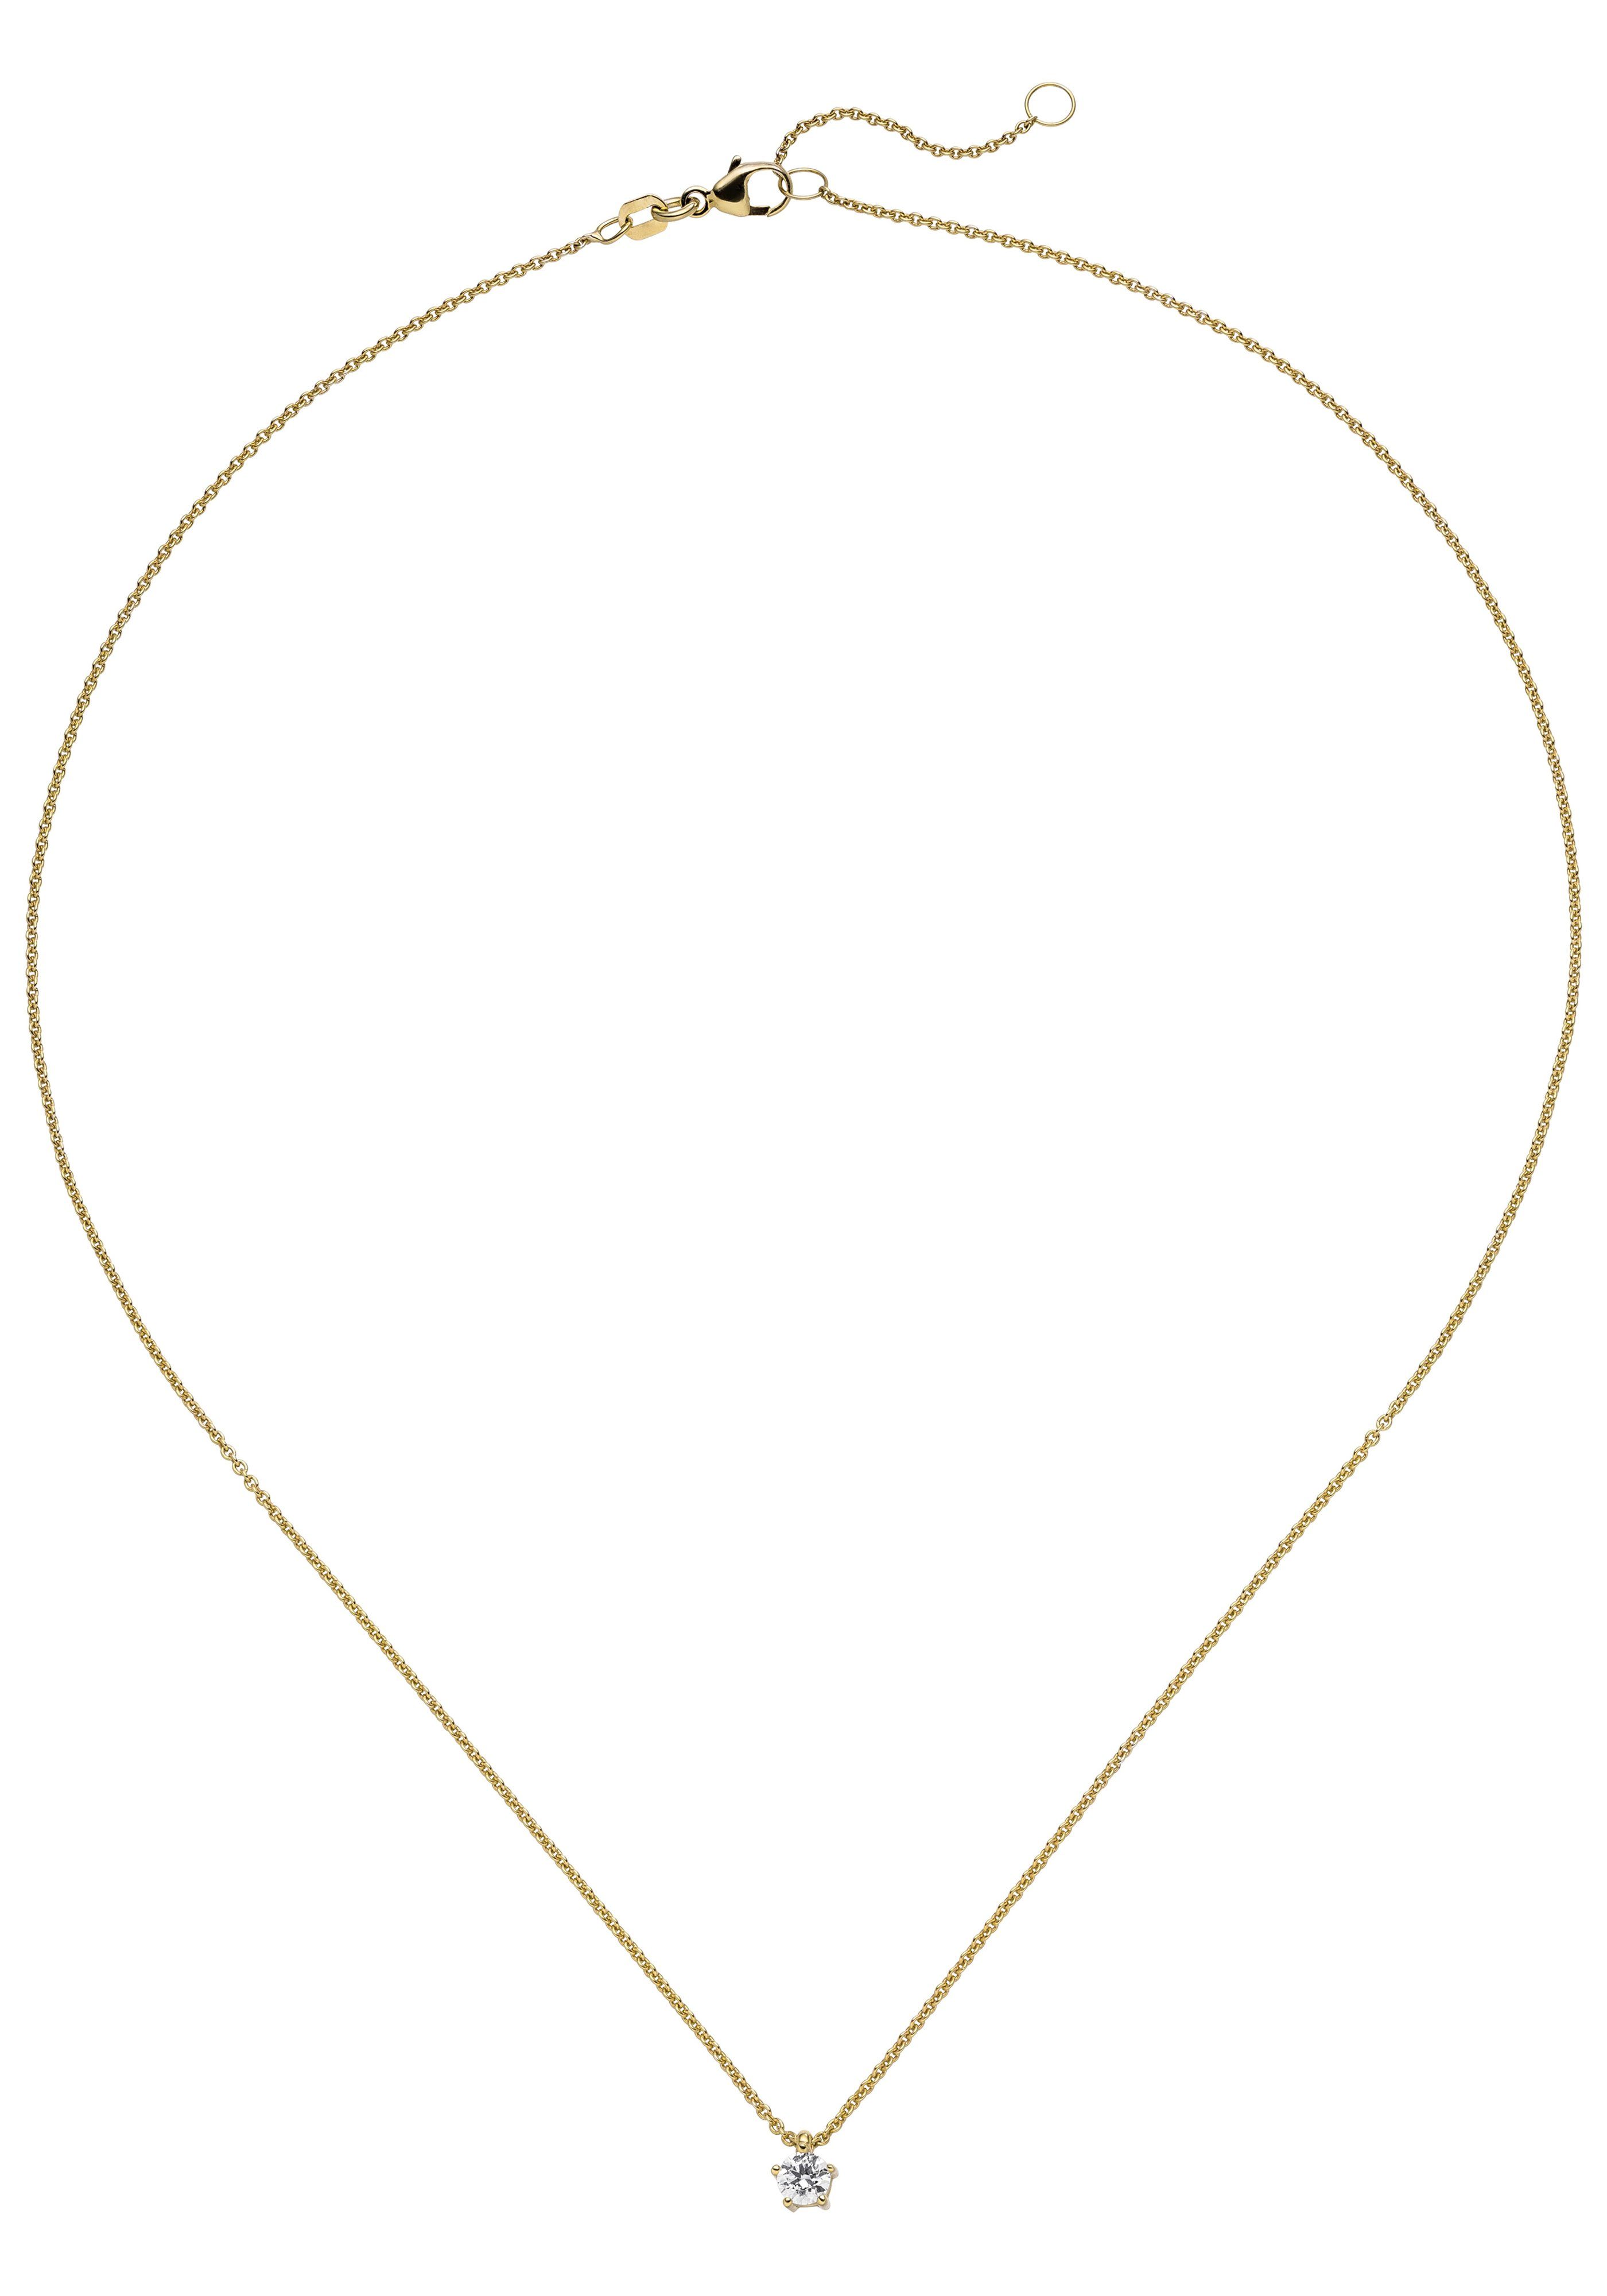 JOBO Kette mit Anhänger »Solitär«, 585 Gold mit 1 Diamant Brillant 0,25 ct.  45 cm online kaufen | OTTO